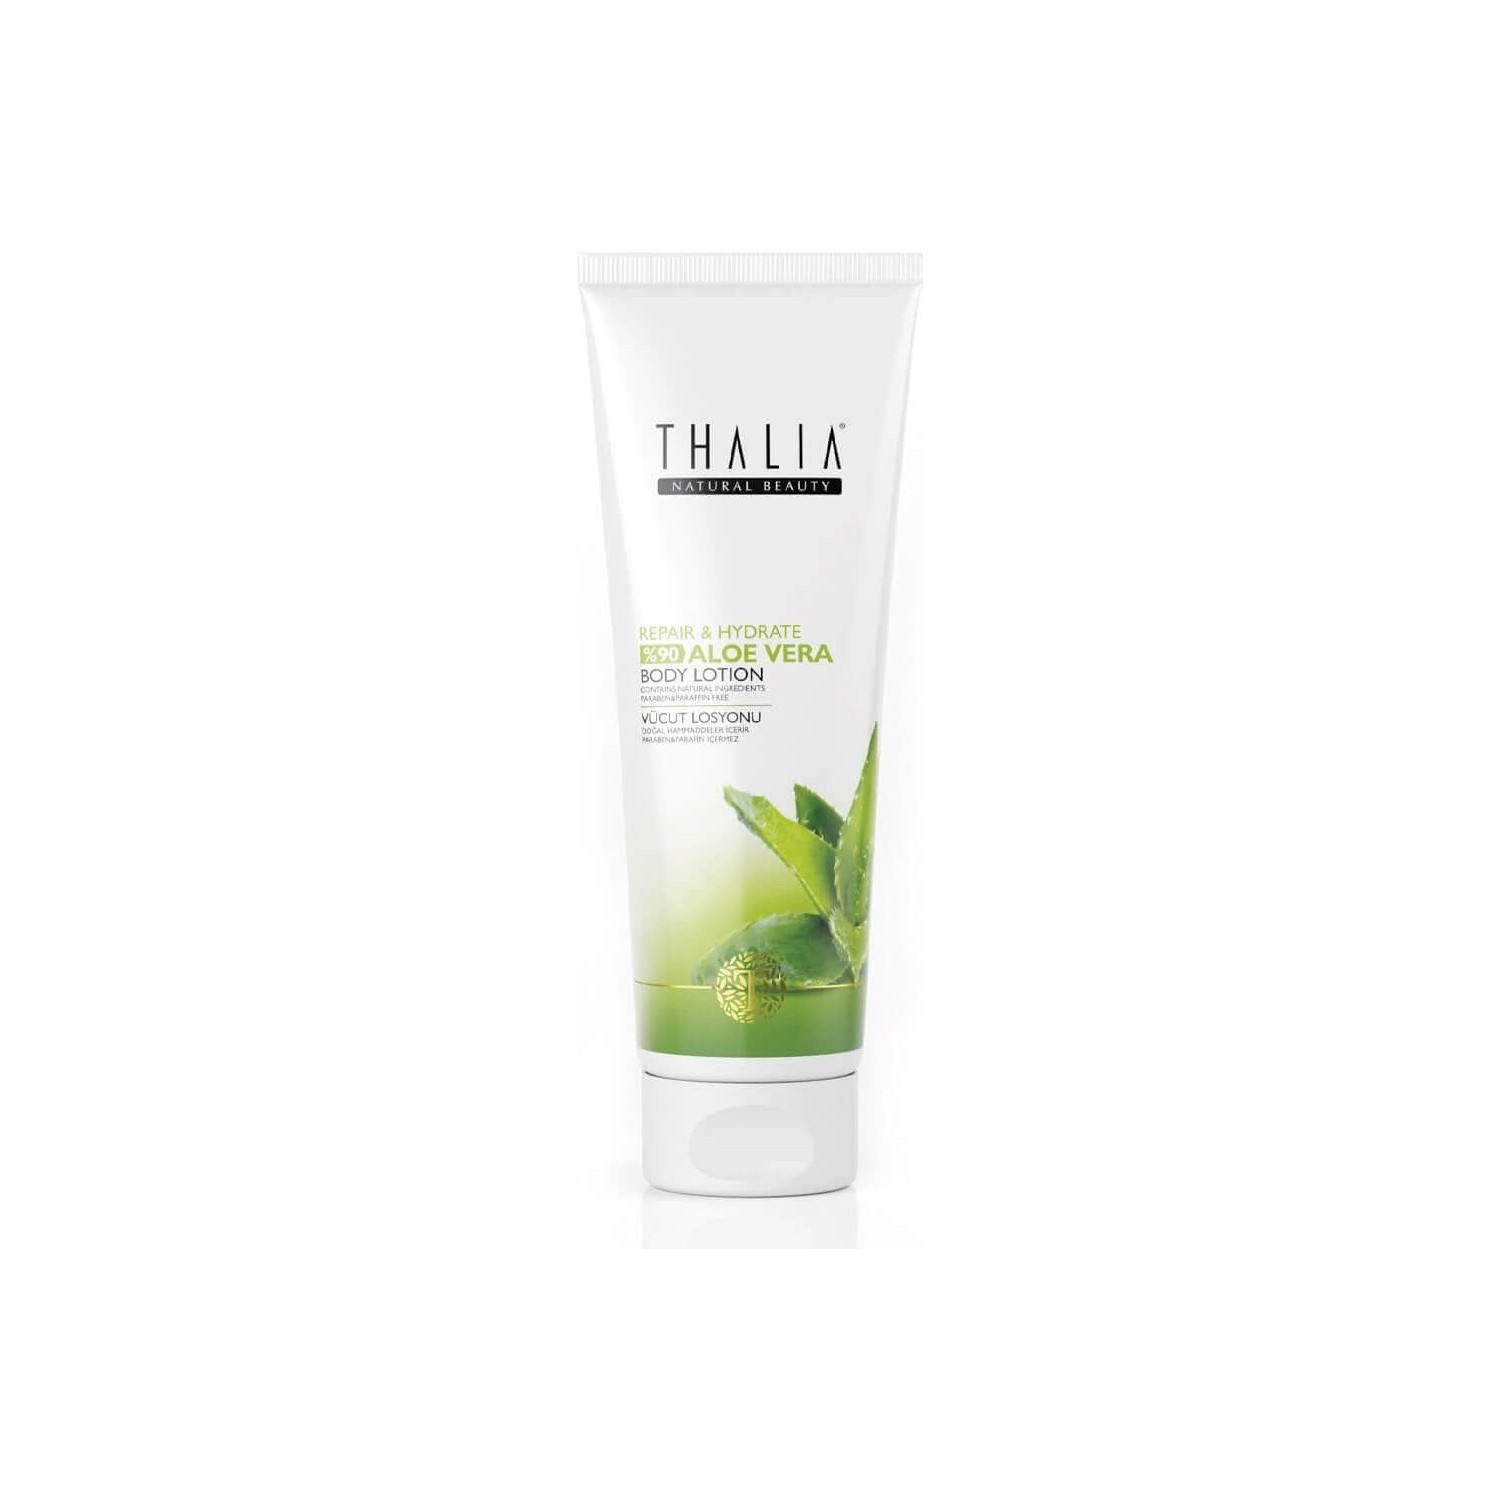 Масло Thalia для ухода за волосами, 75 мл увлажняющая маска для ухода за волосами thalia с оливковым маслом 175 мл